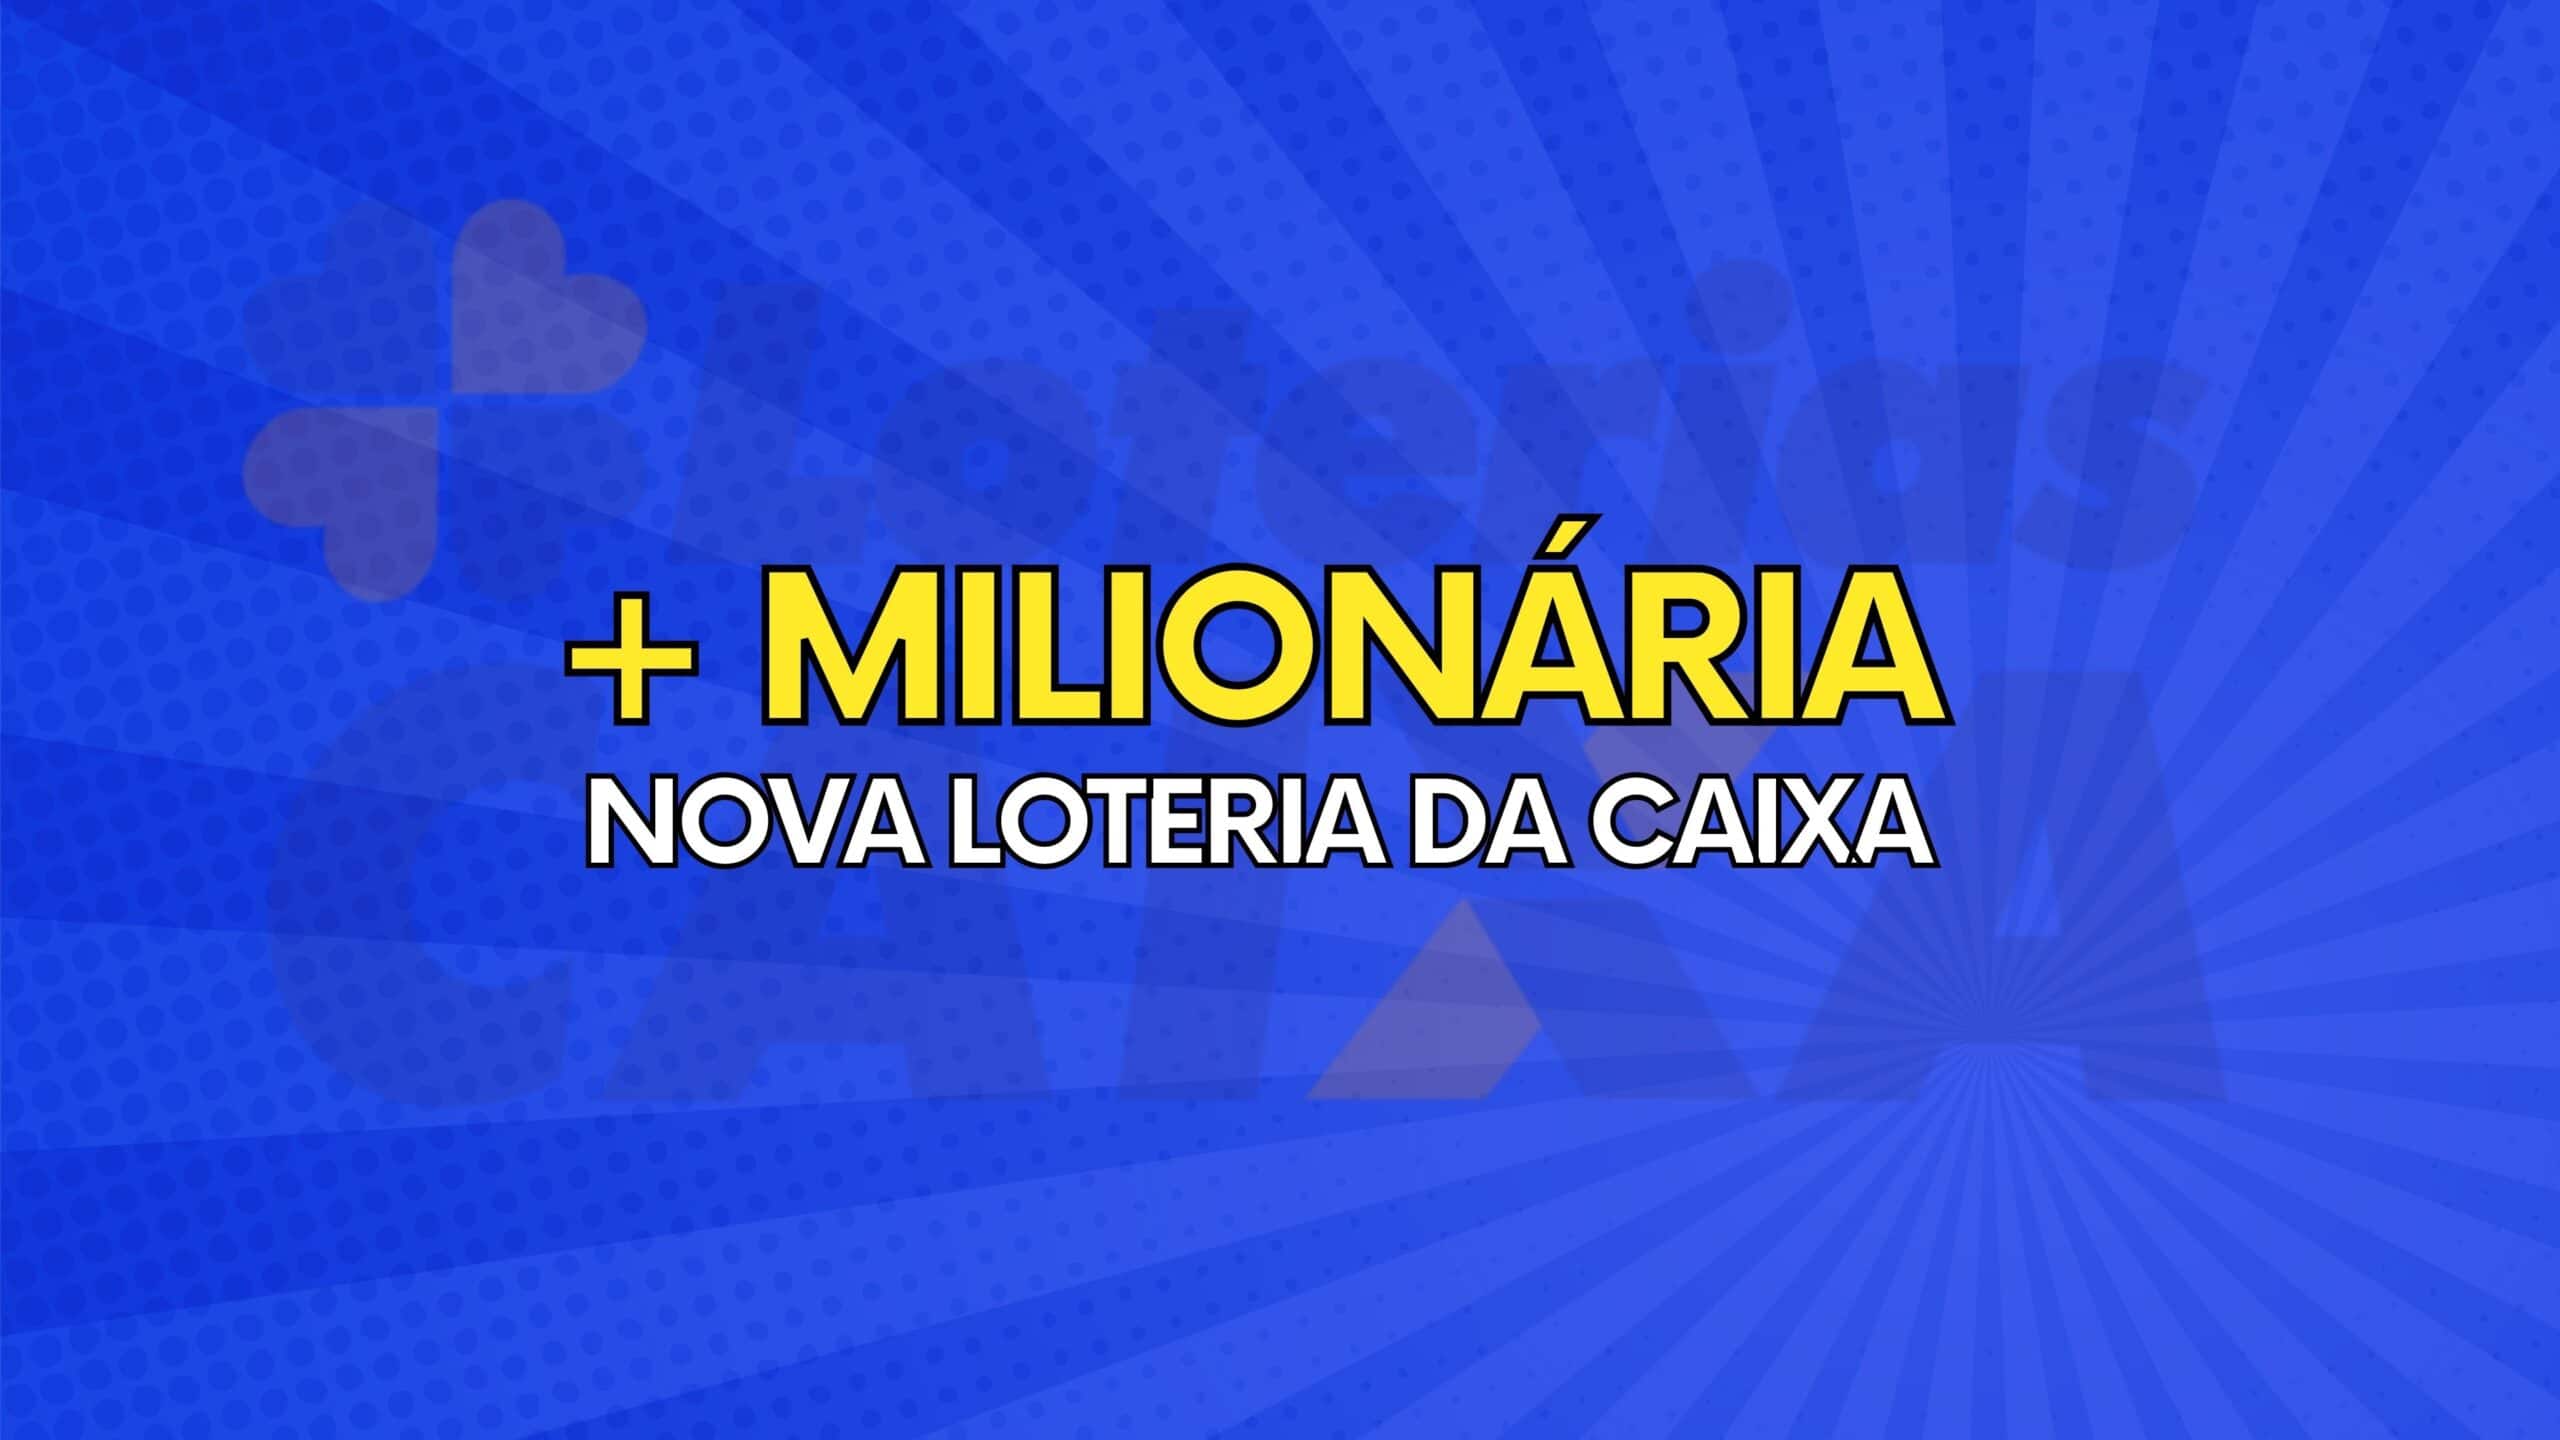 + milionaria nova loteria da caixa